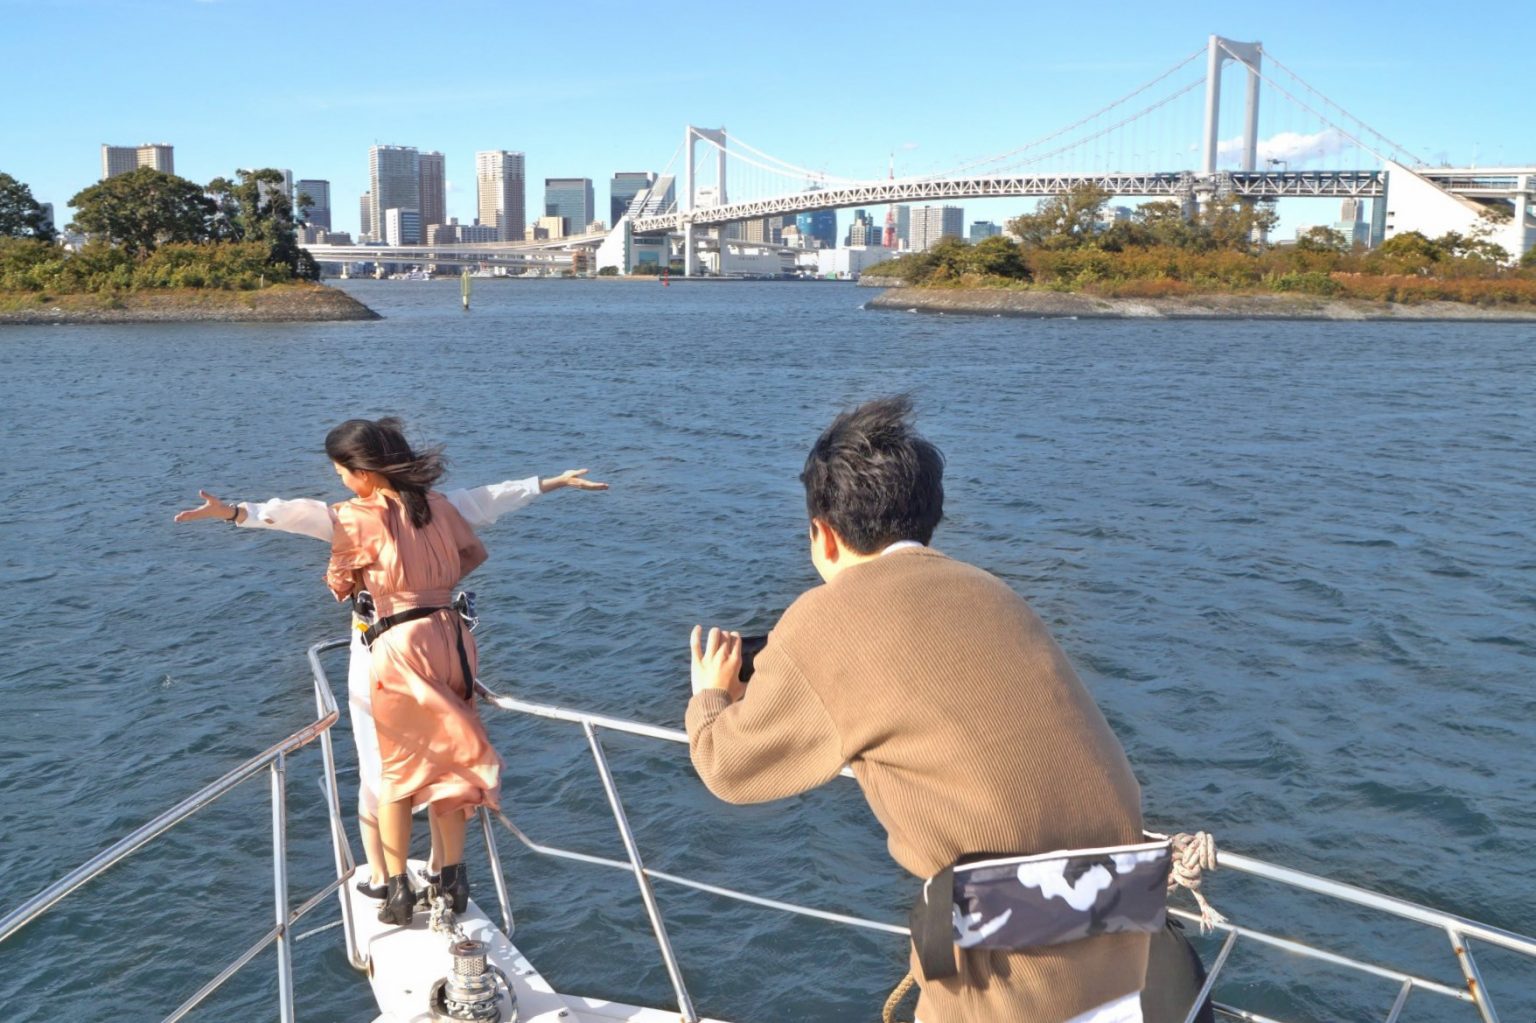 船首でタイタニックポーズをしてクルーズを楽しむ女性、を撮影する男性